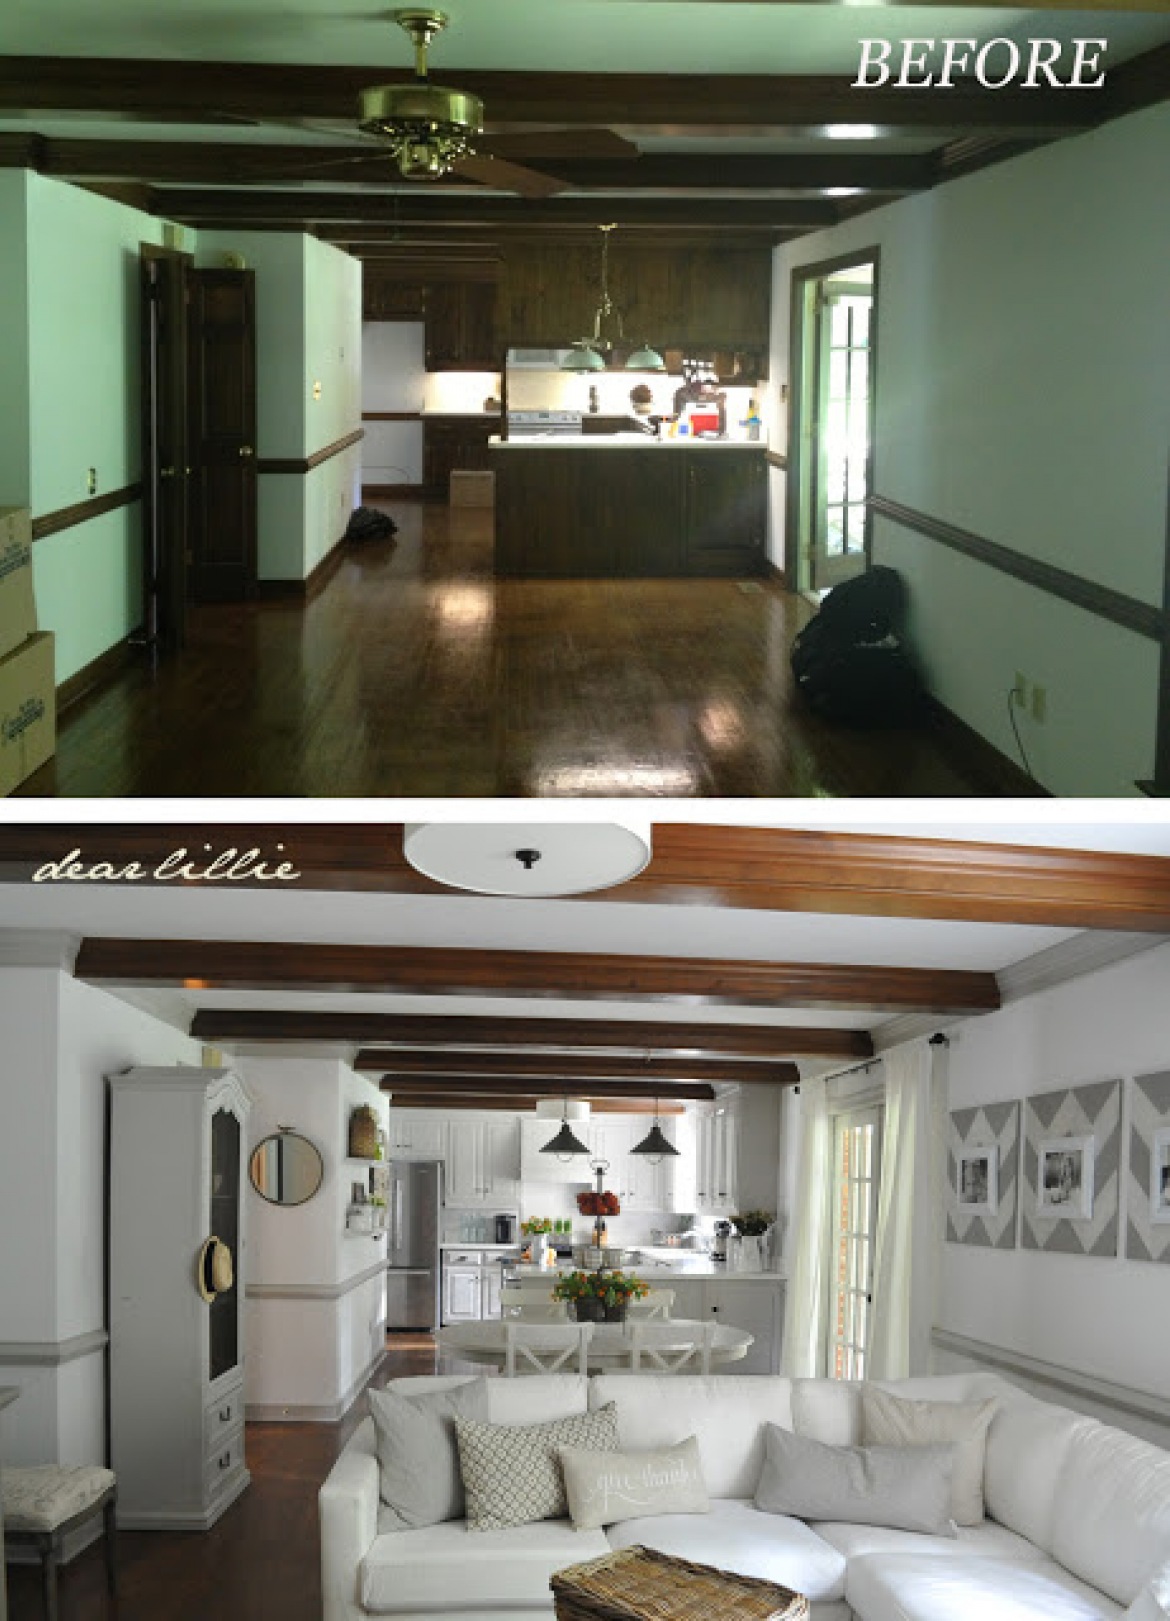 Salon z kuchnią before & after (48756)